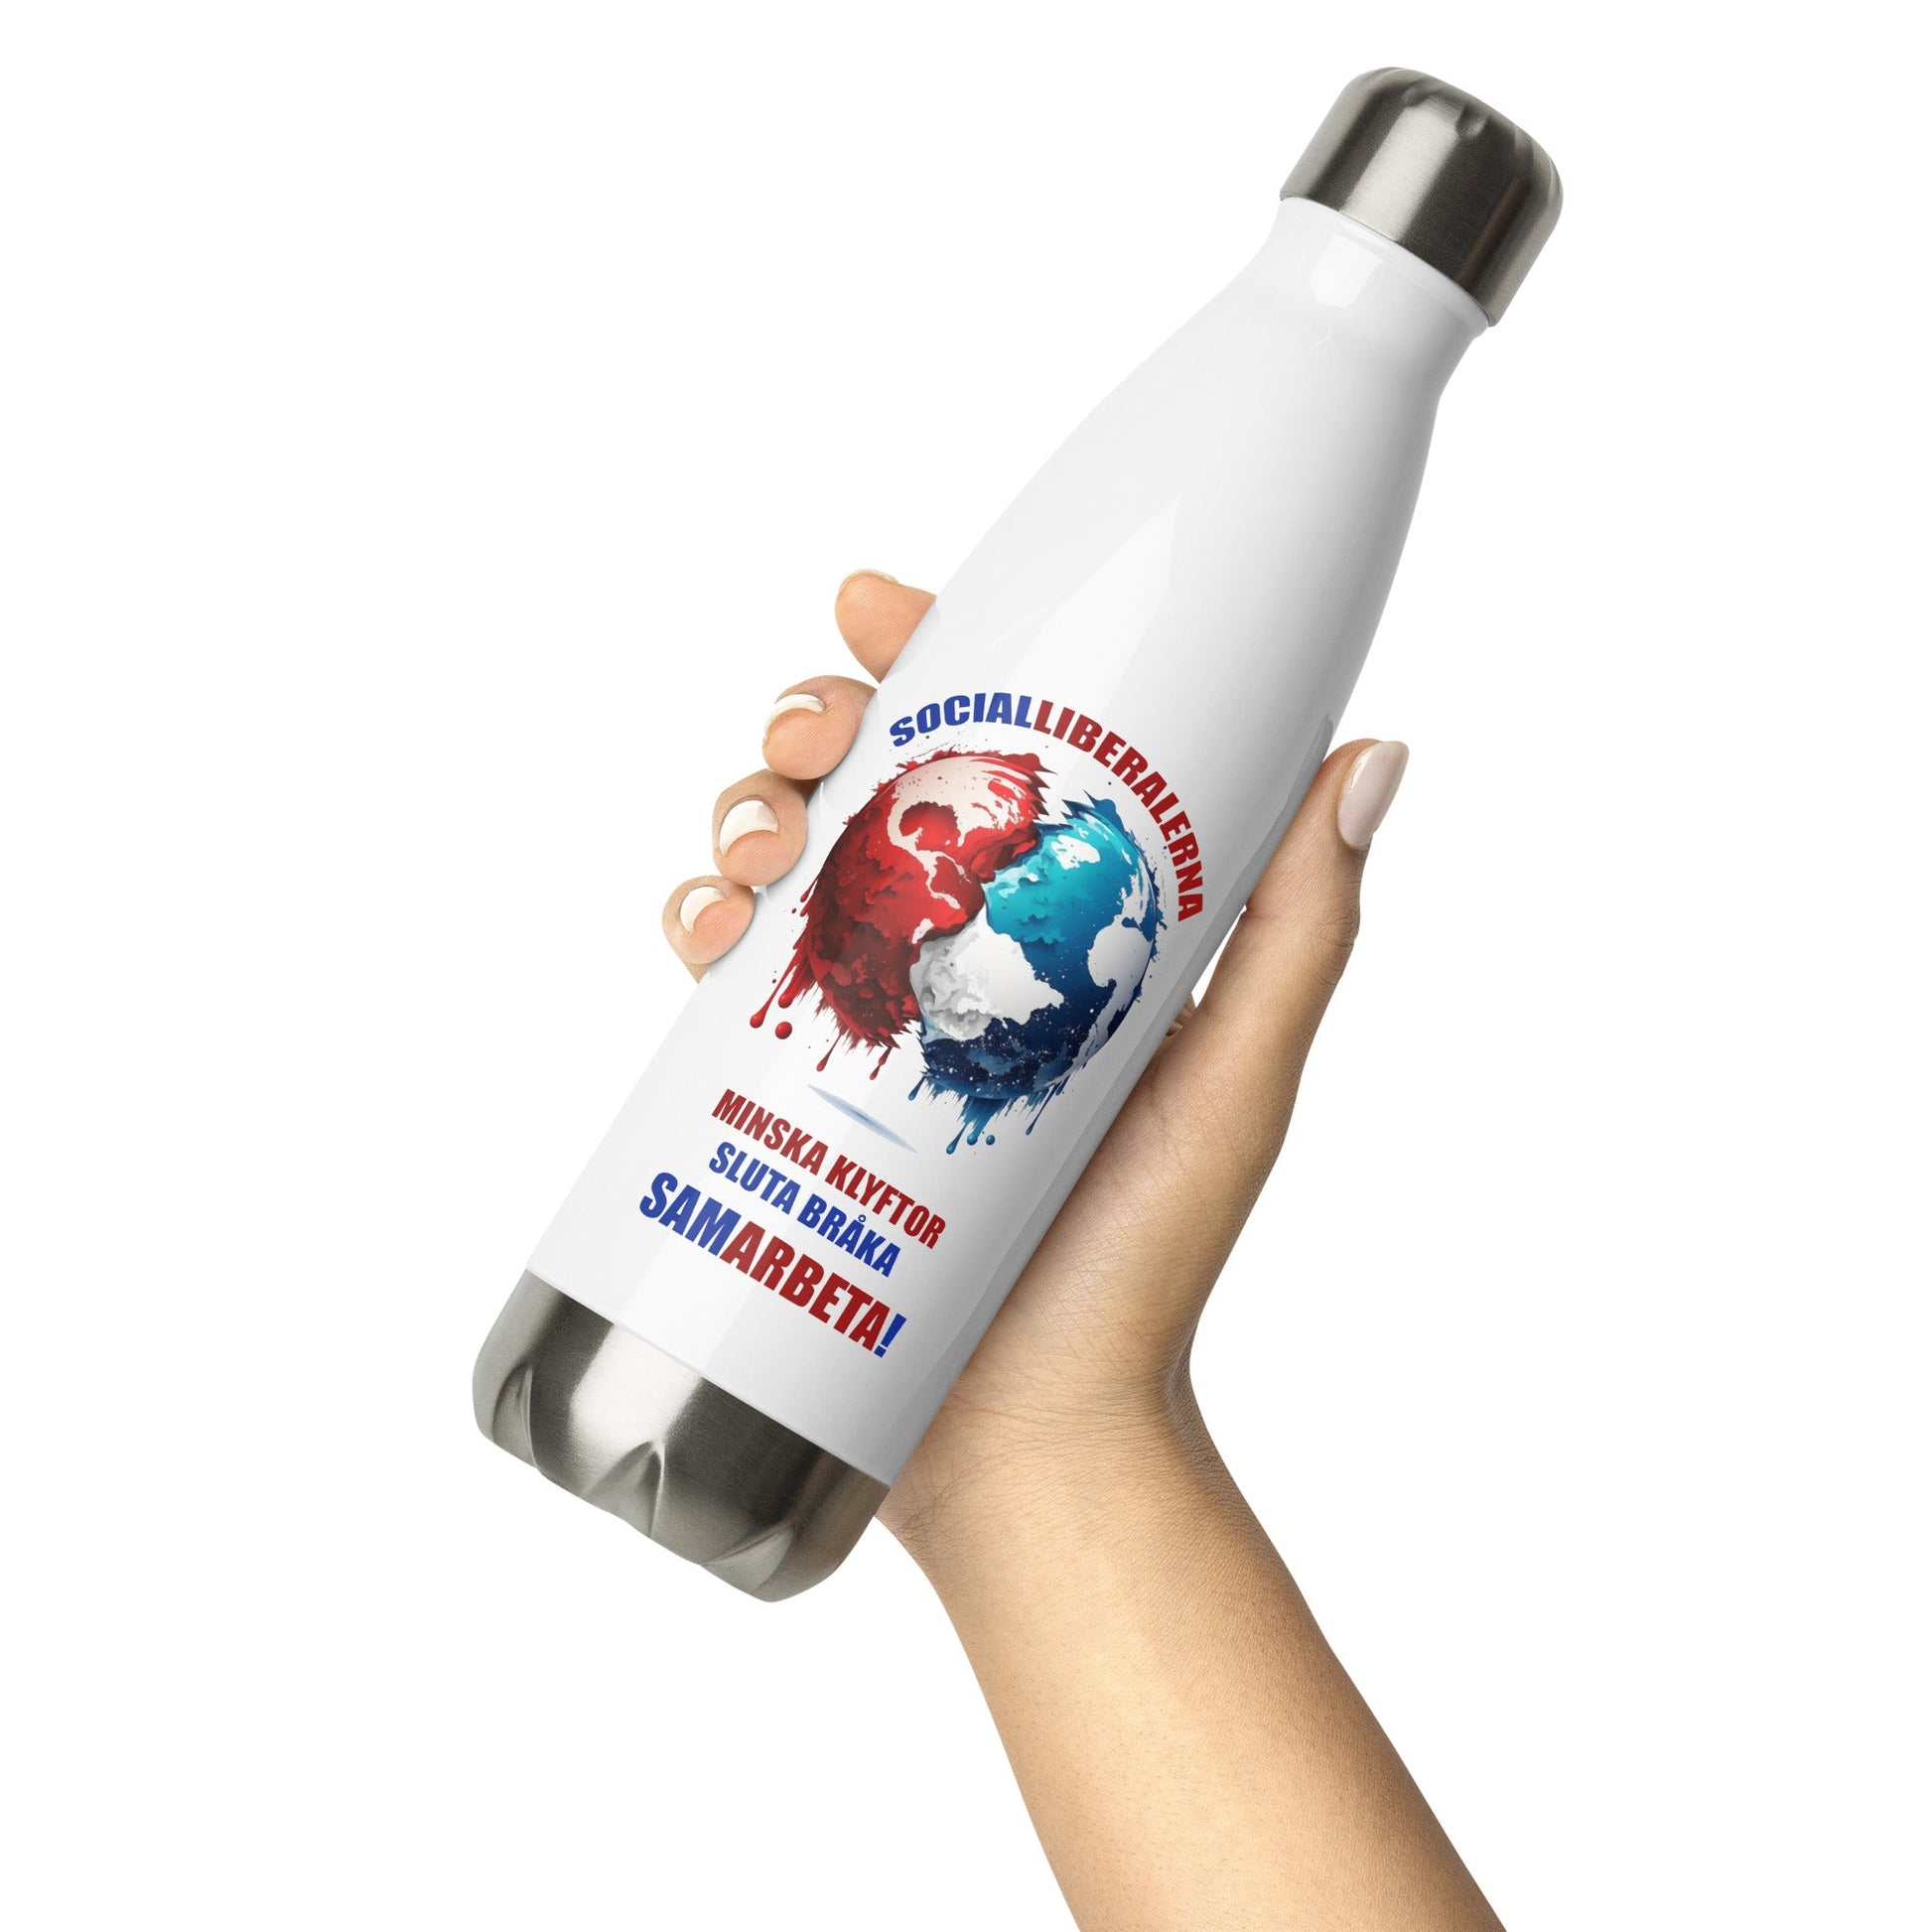 4 Socialliberalerna Samarbeta Stainless Steel Water Bottle